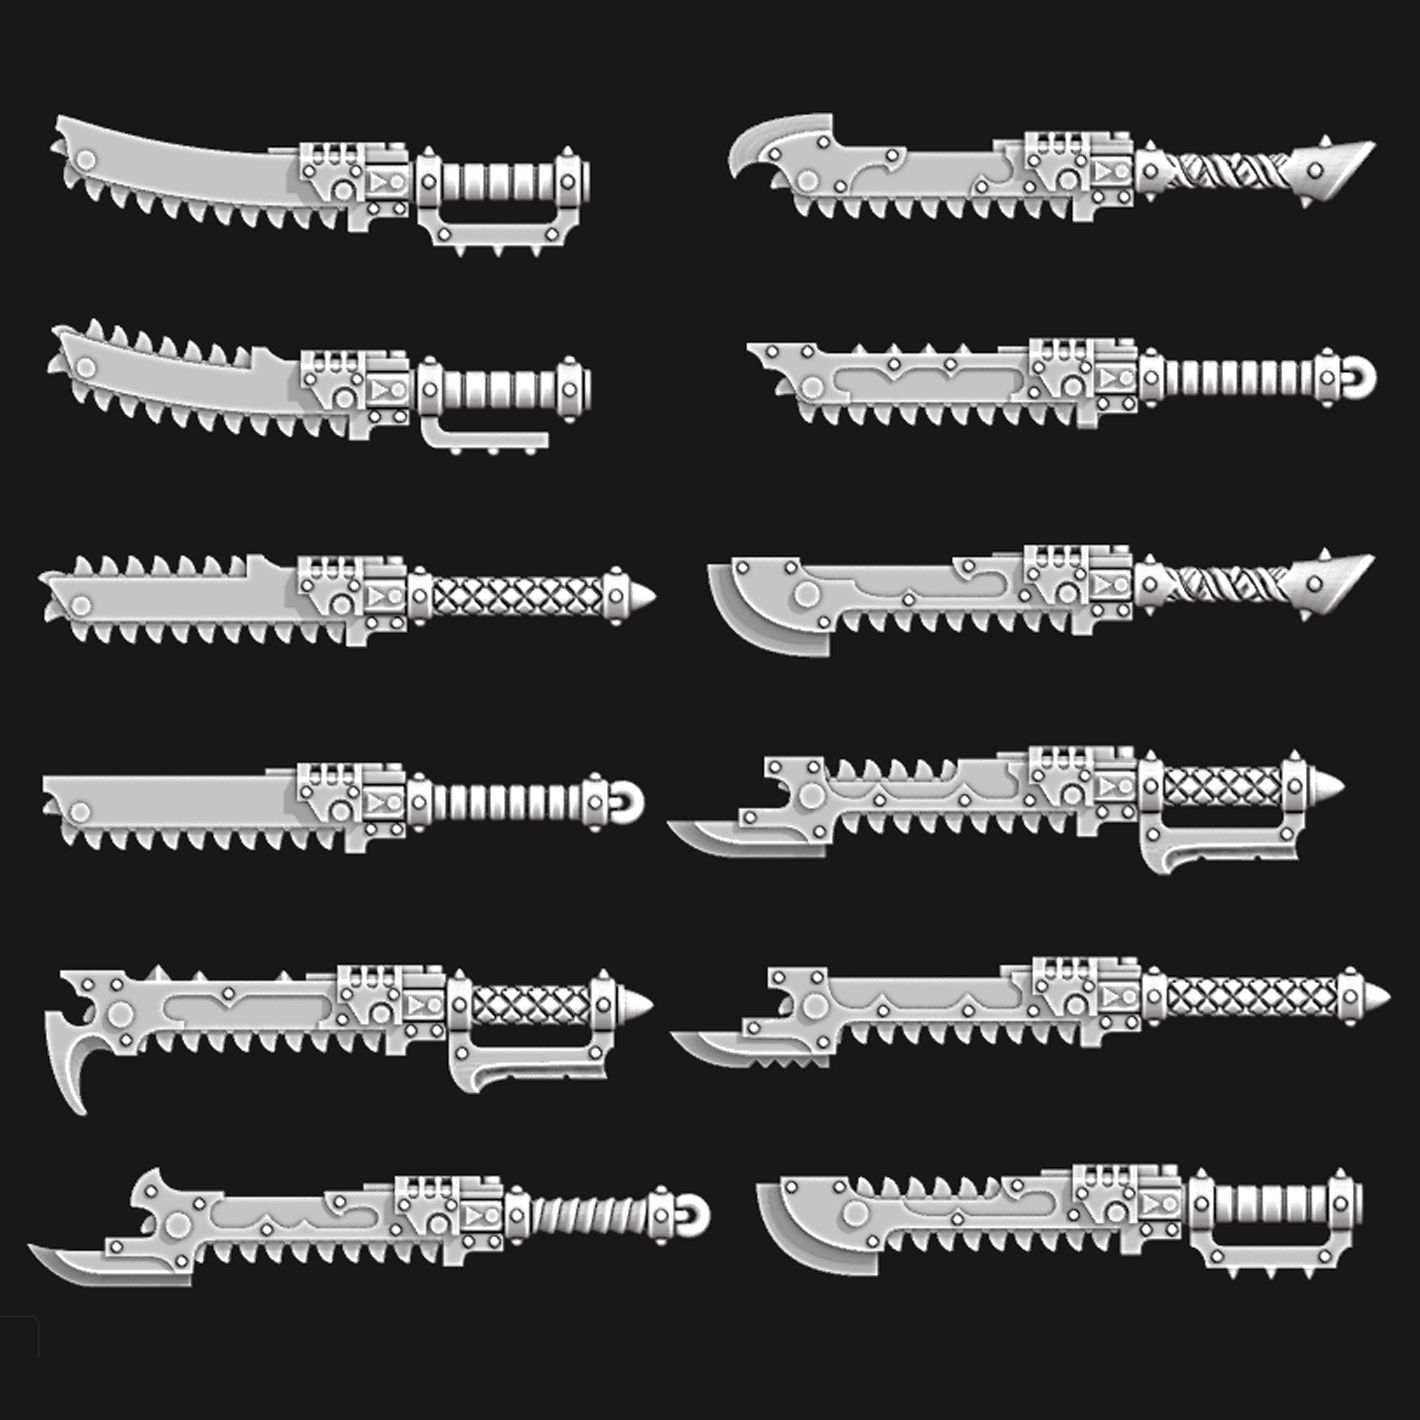 Chainswords.jpg Файл 3D Зубчатые ножи и мечи・Модель для загрузки и печати в формате 3D, Red-warden-miniatures